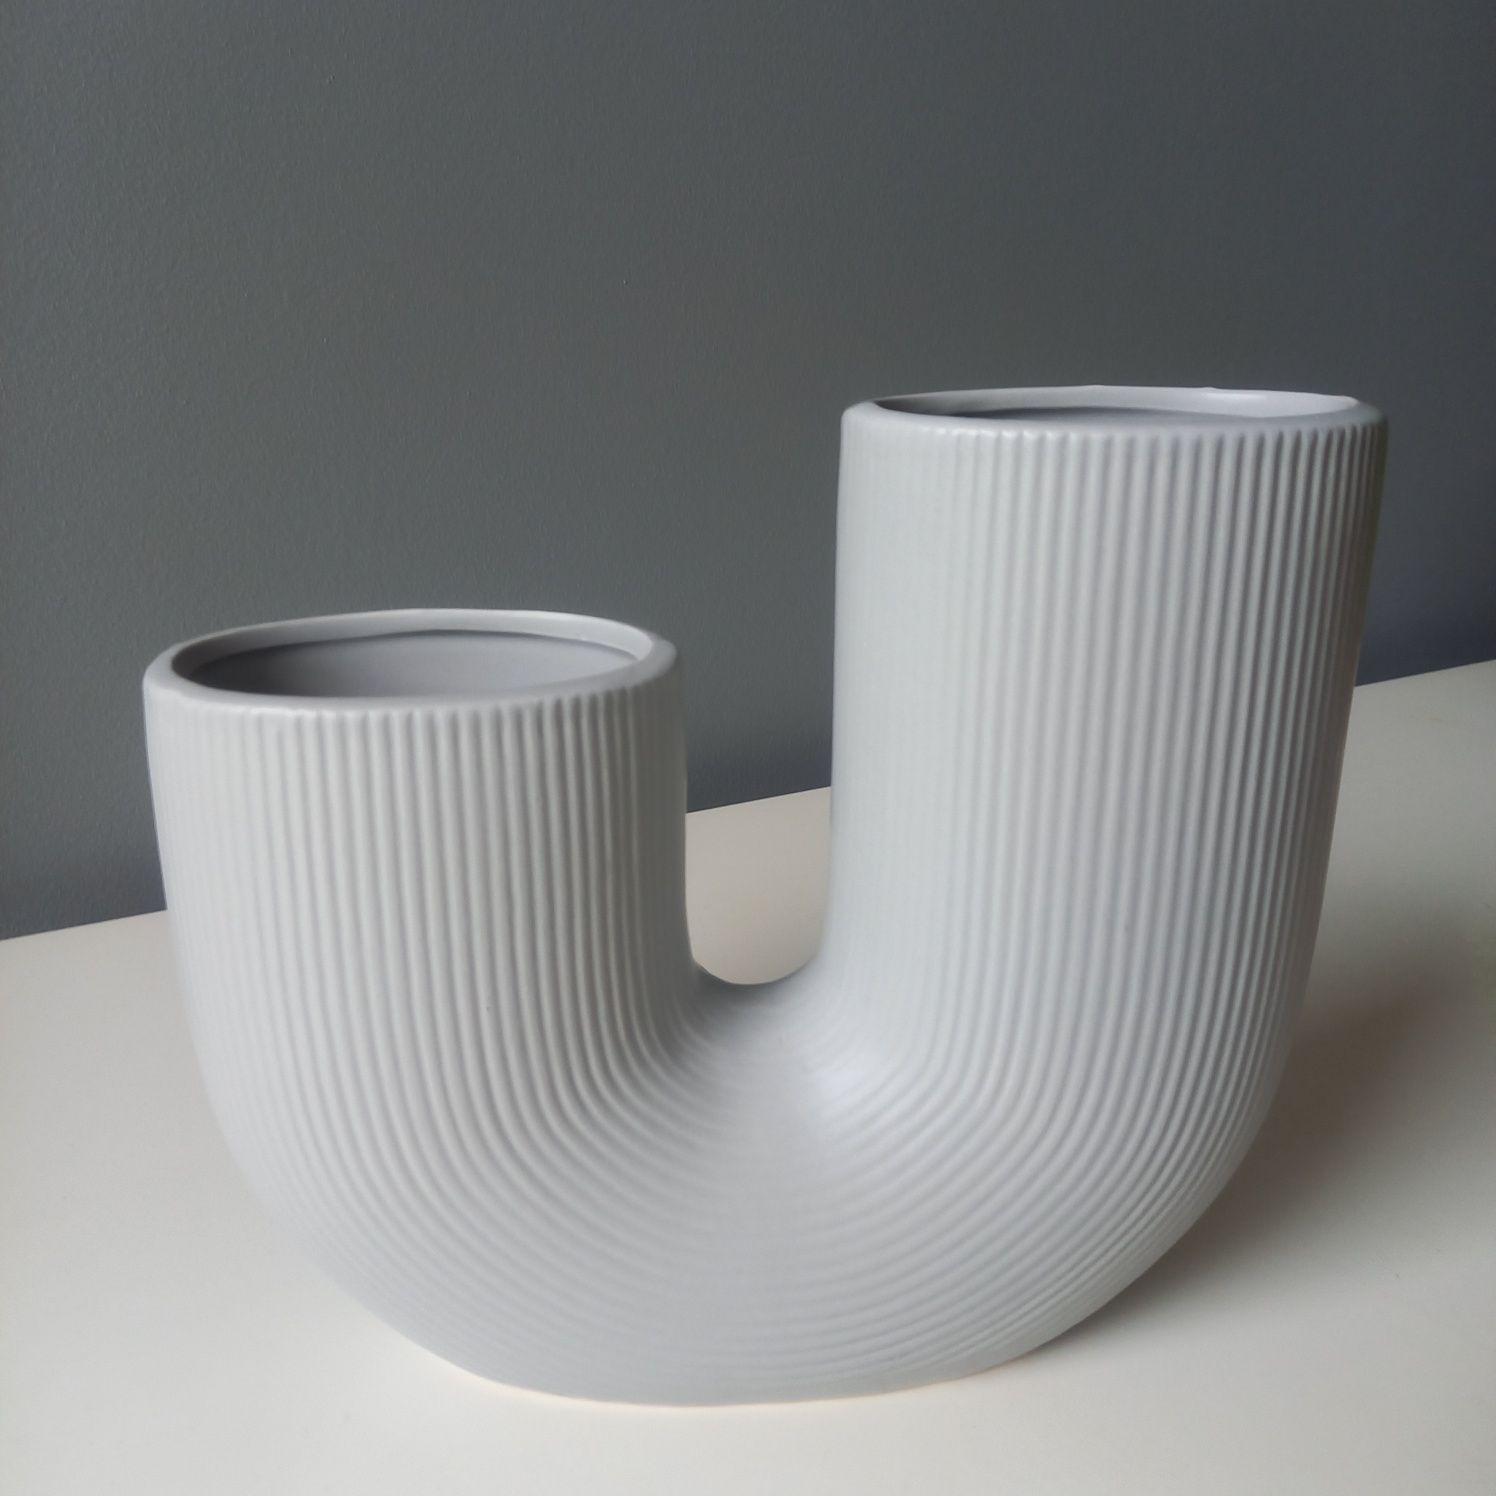 Wazon szary ceramiczny nowoczesny duży